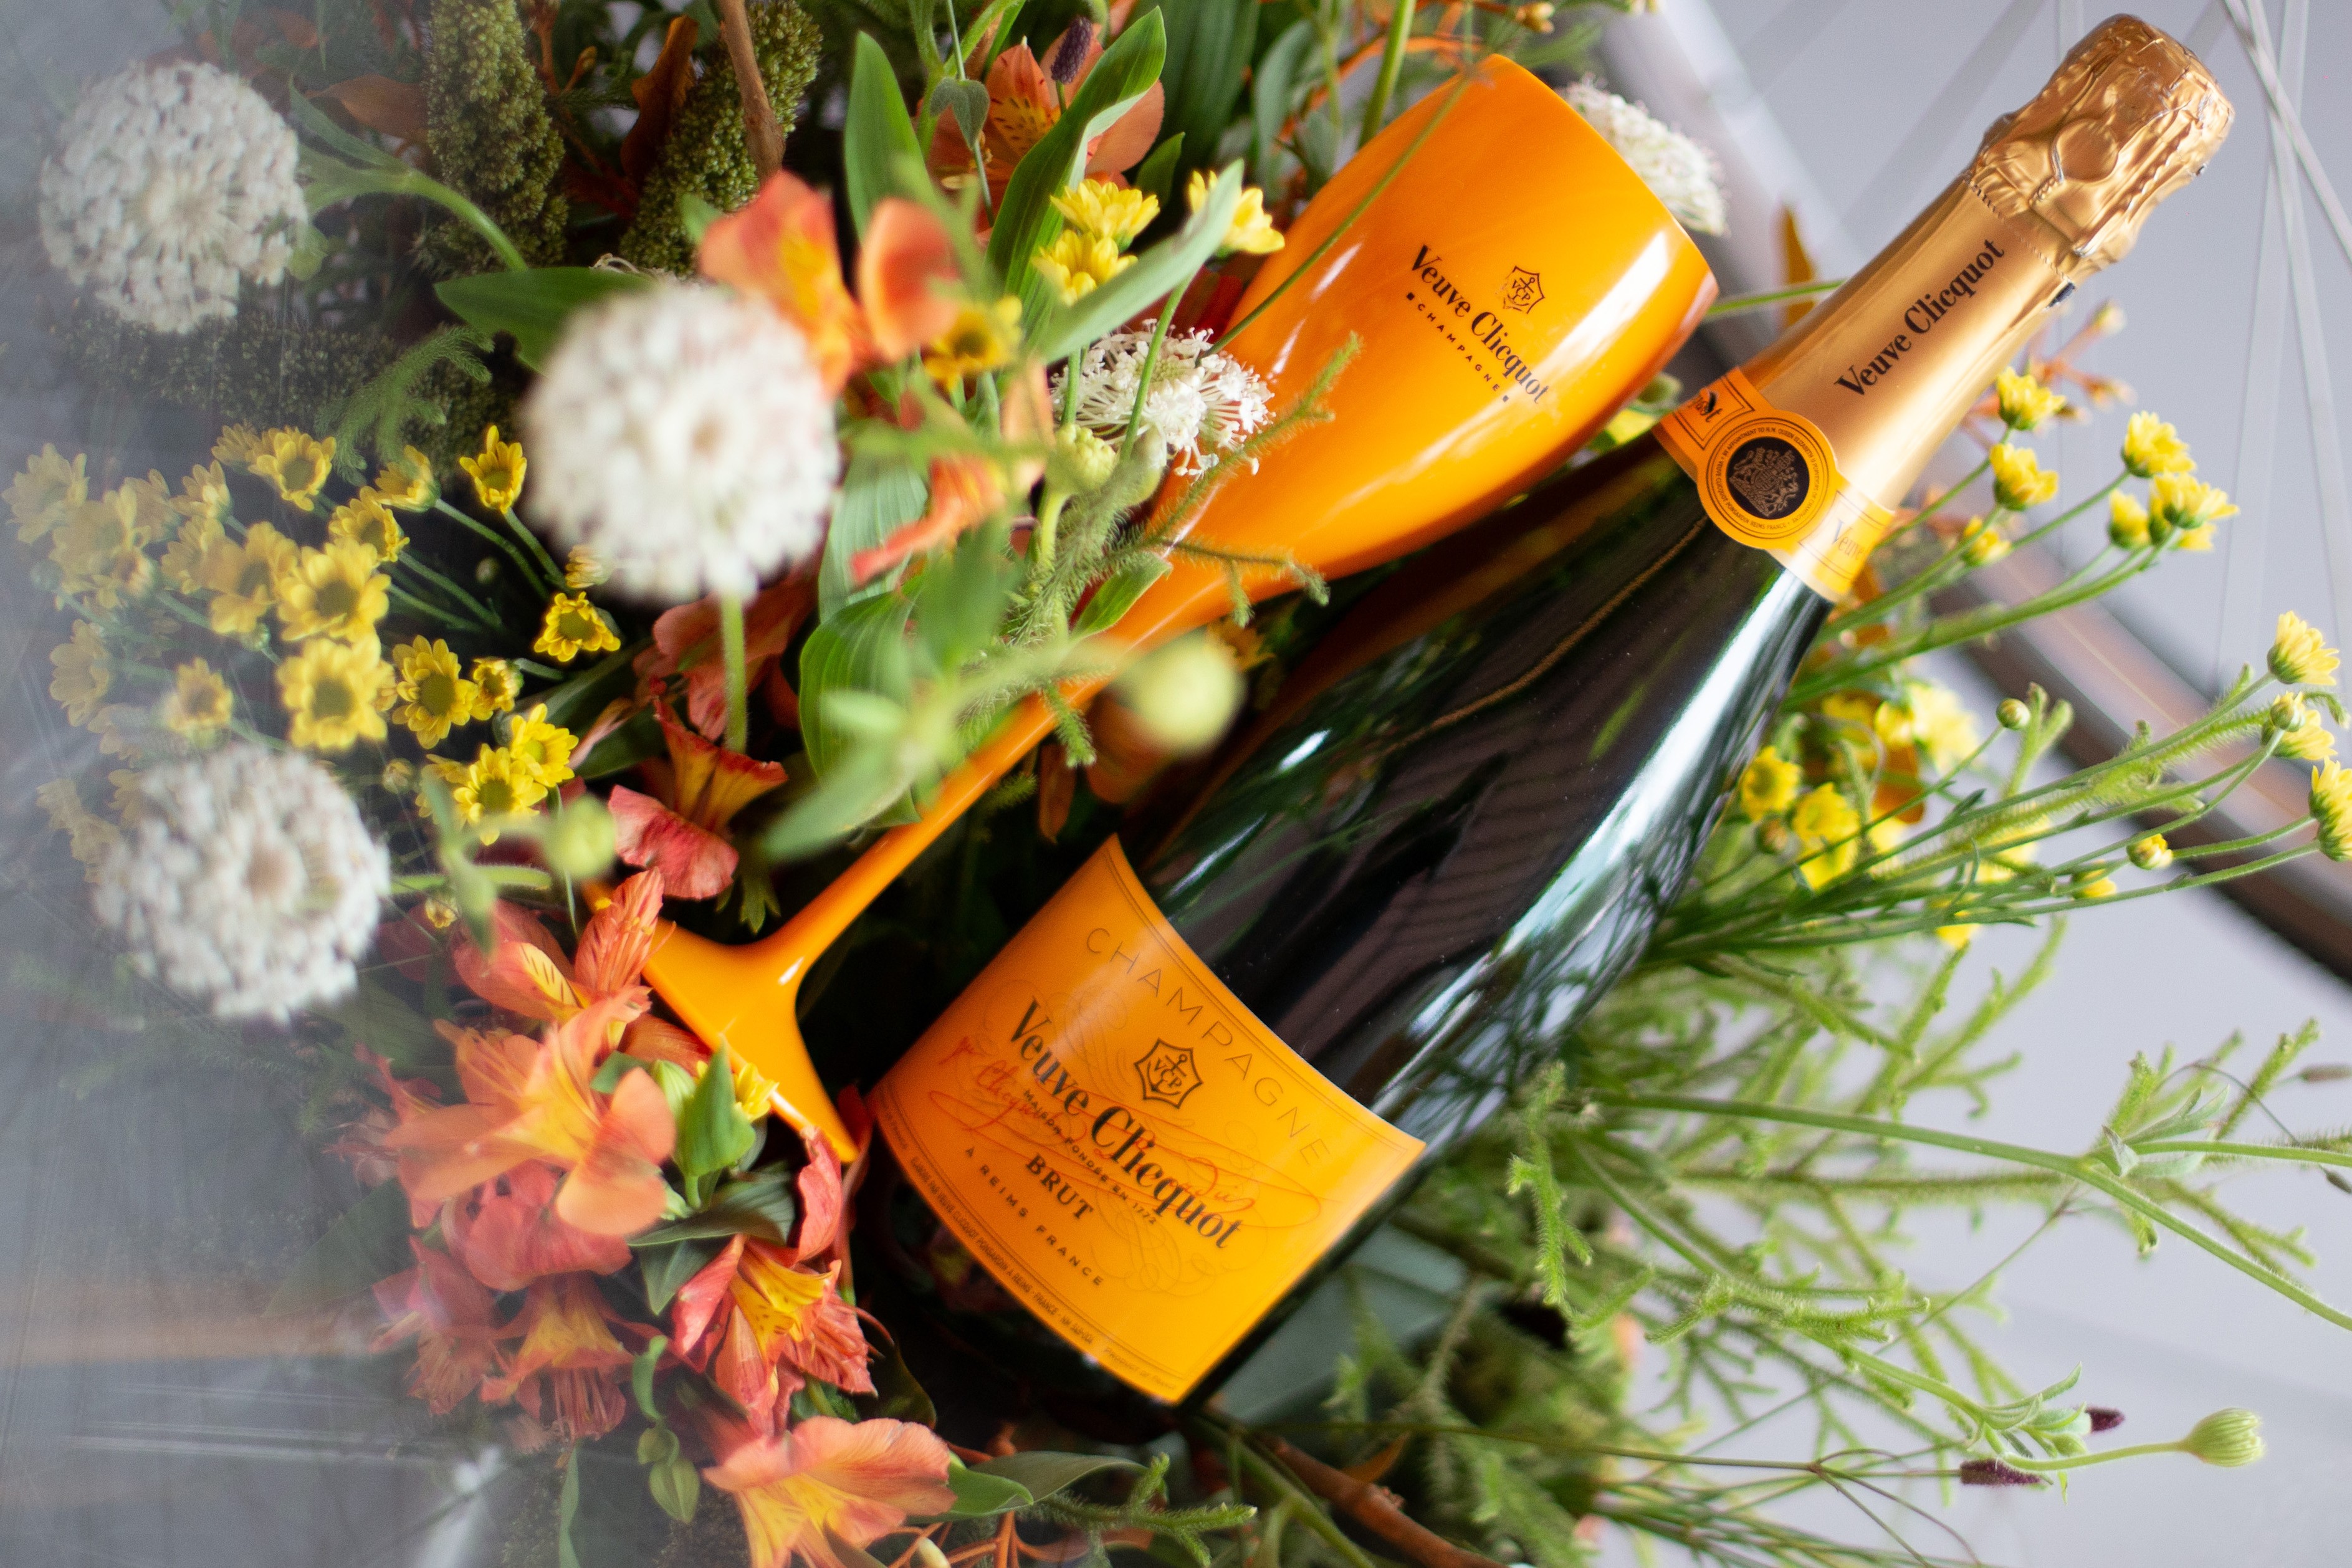 Veuve Clicquot celebra Dia do Champagne (Foto: Divulgação)